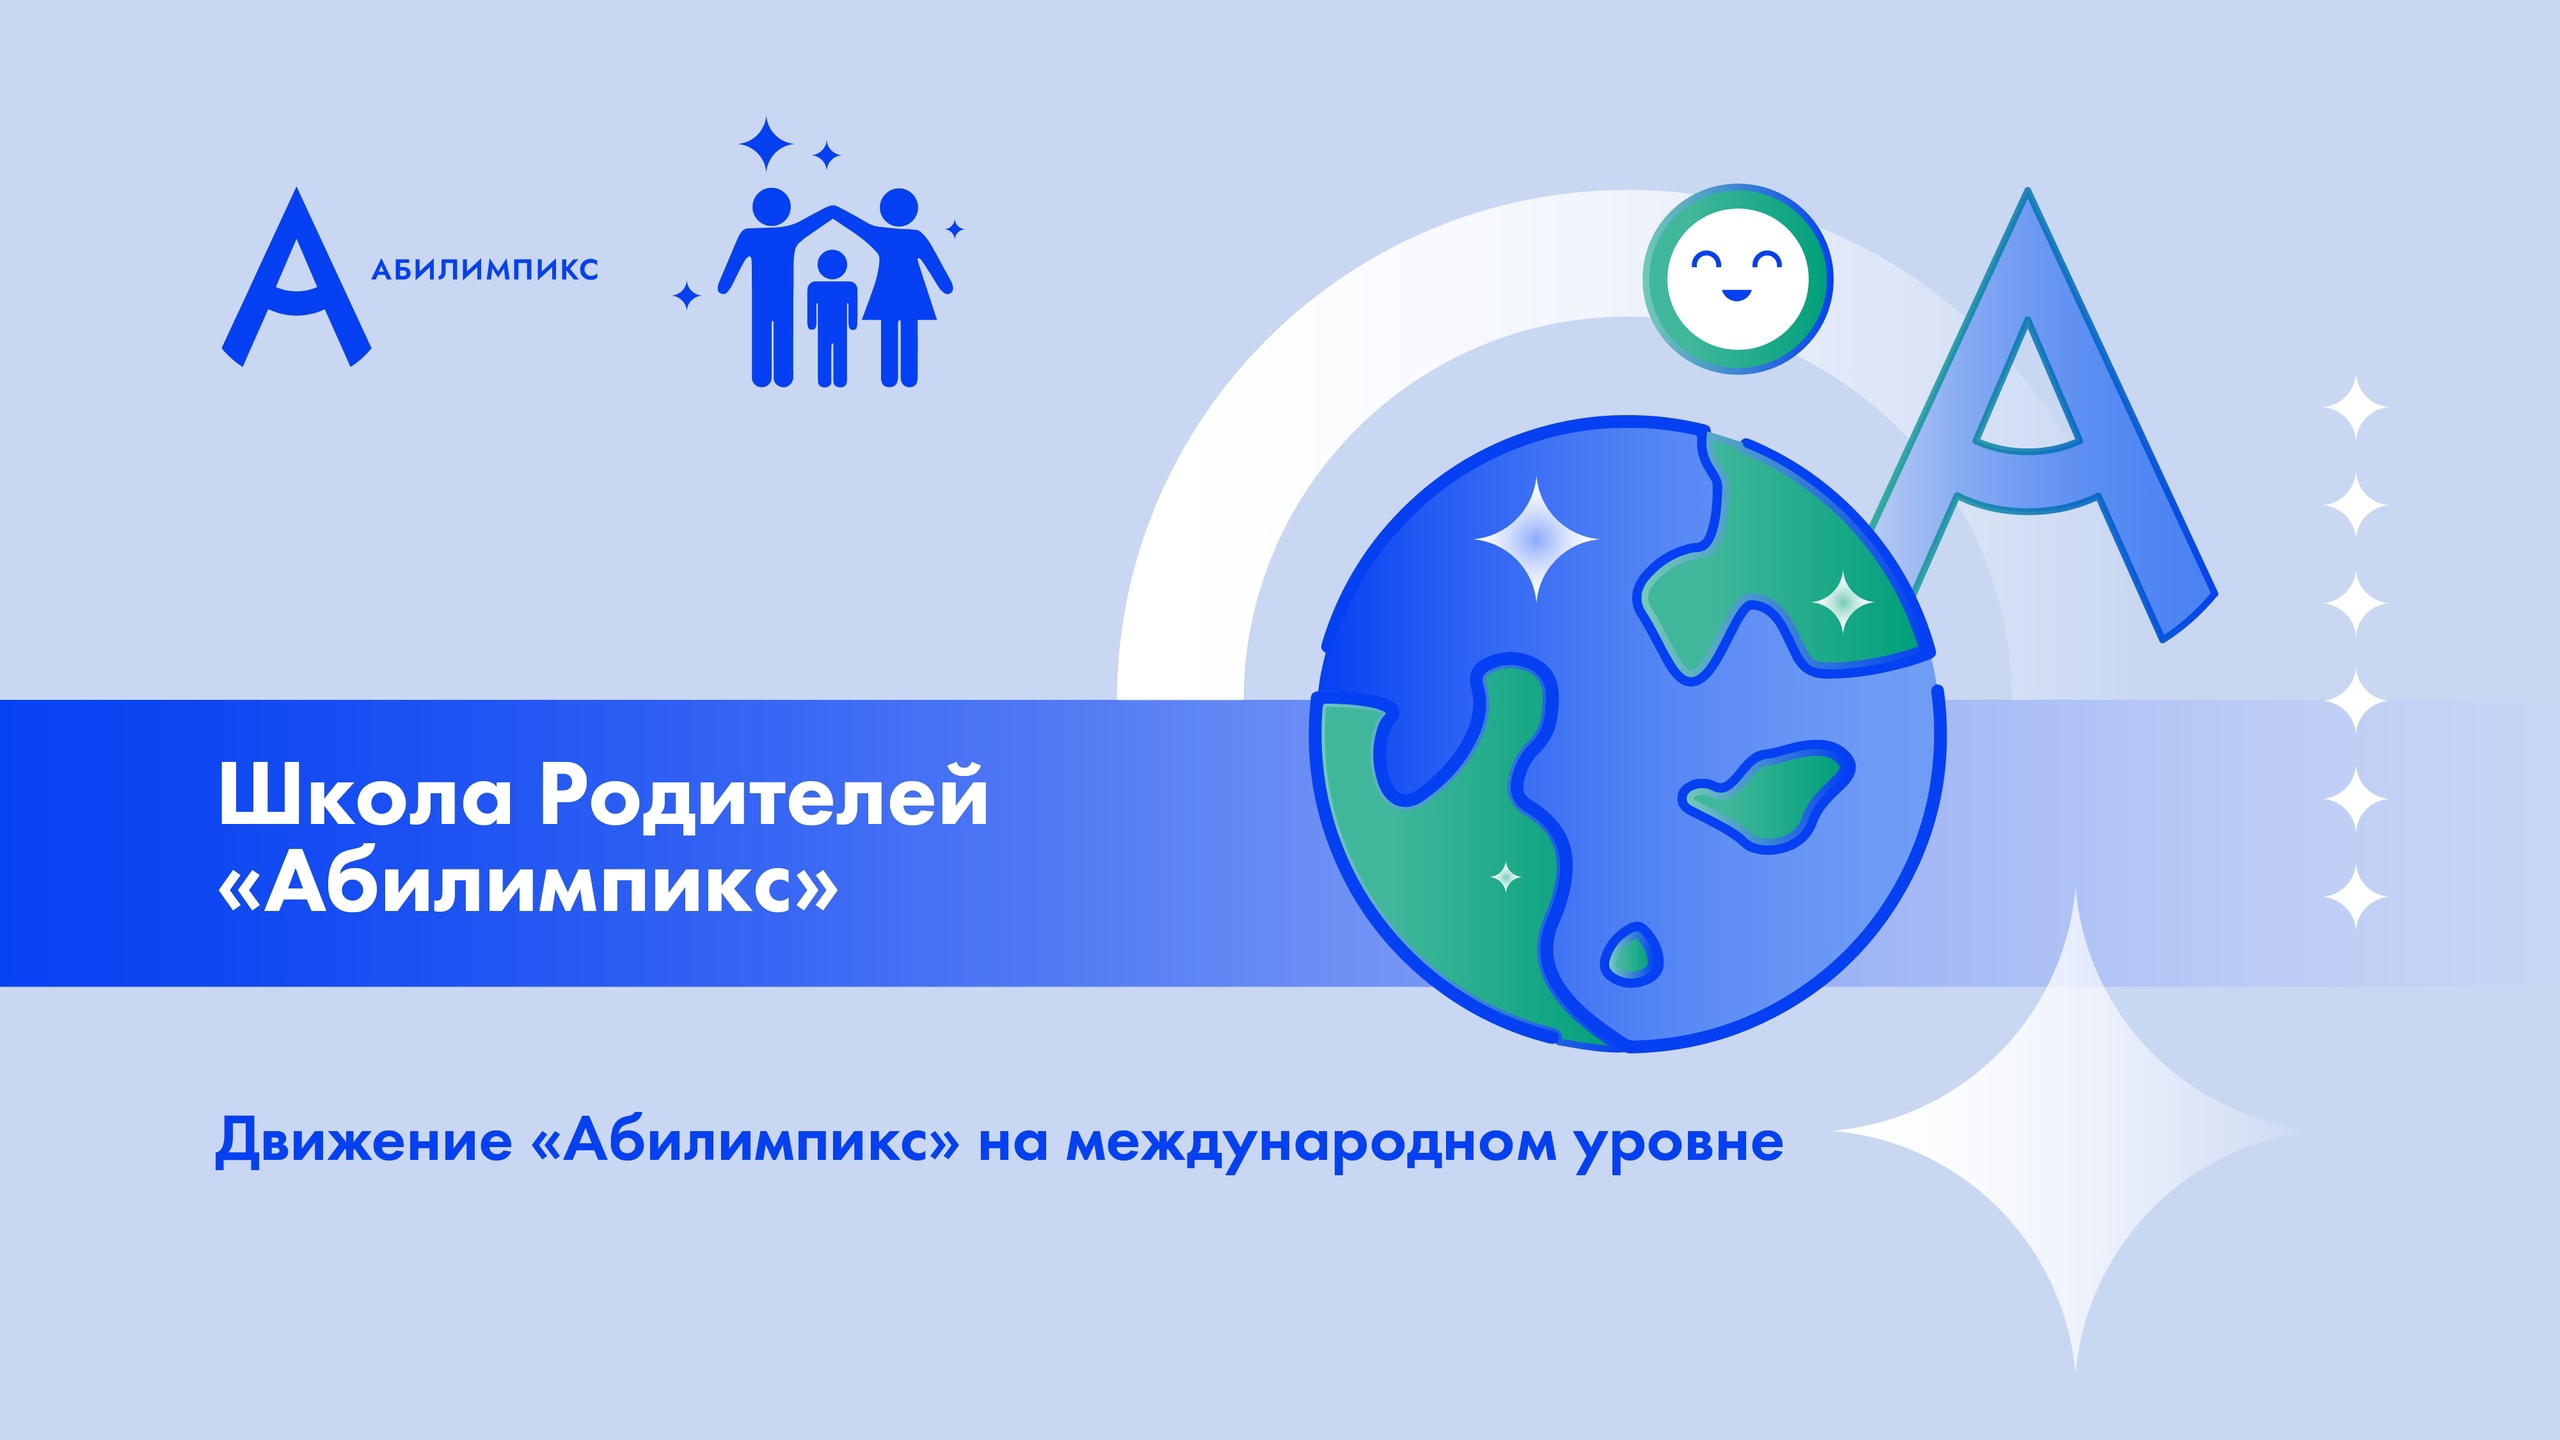 В рамках проекта «Школа родителей «Абилимпикс» спикер - Наталия Петрухина, главный специалист Управления сопровождения движения «Абилимпикс».